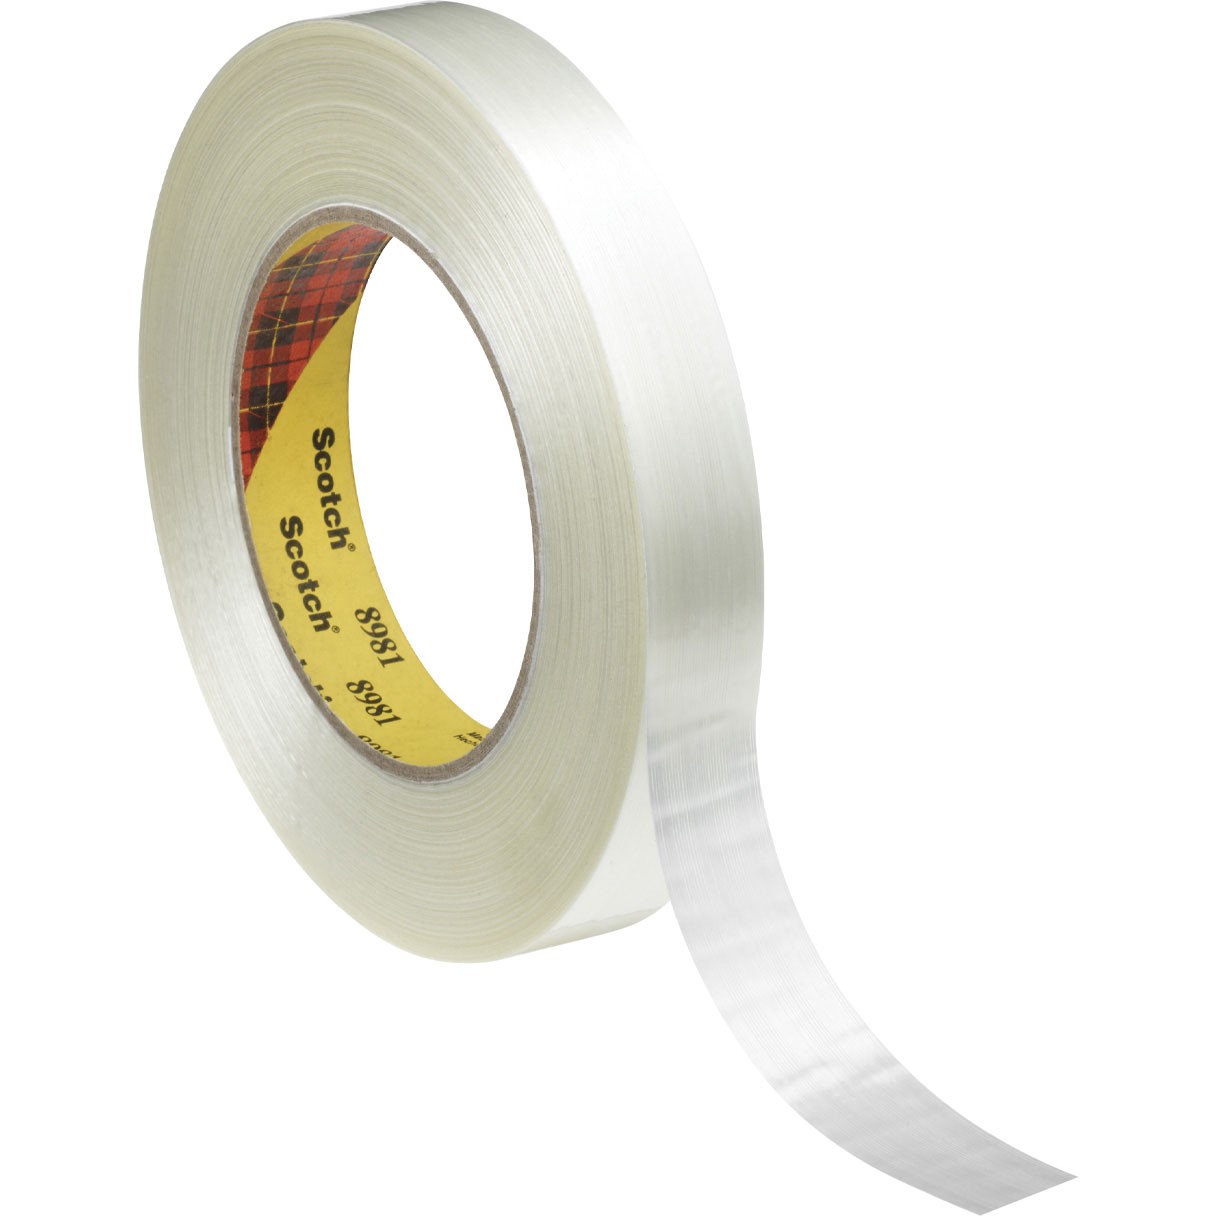 Scotch 8981 filamenttape 19 mm x 50 m 48 rl